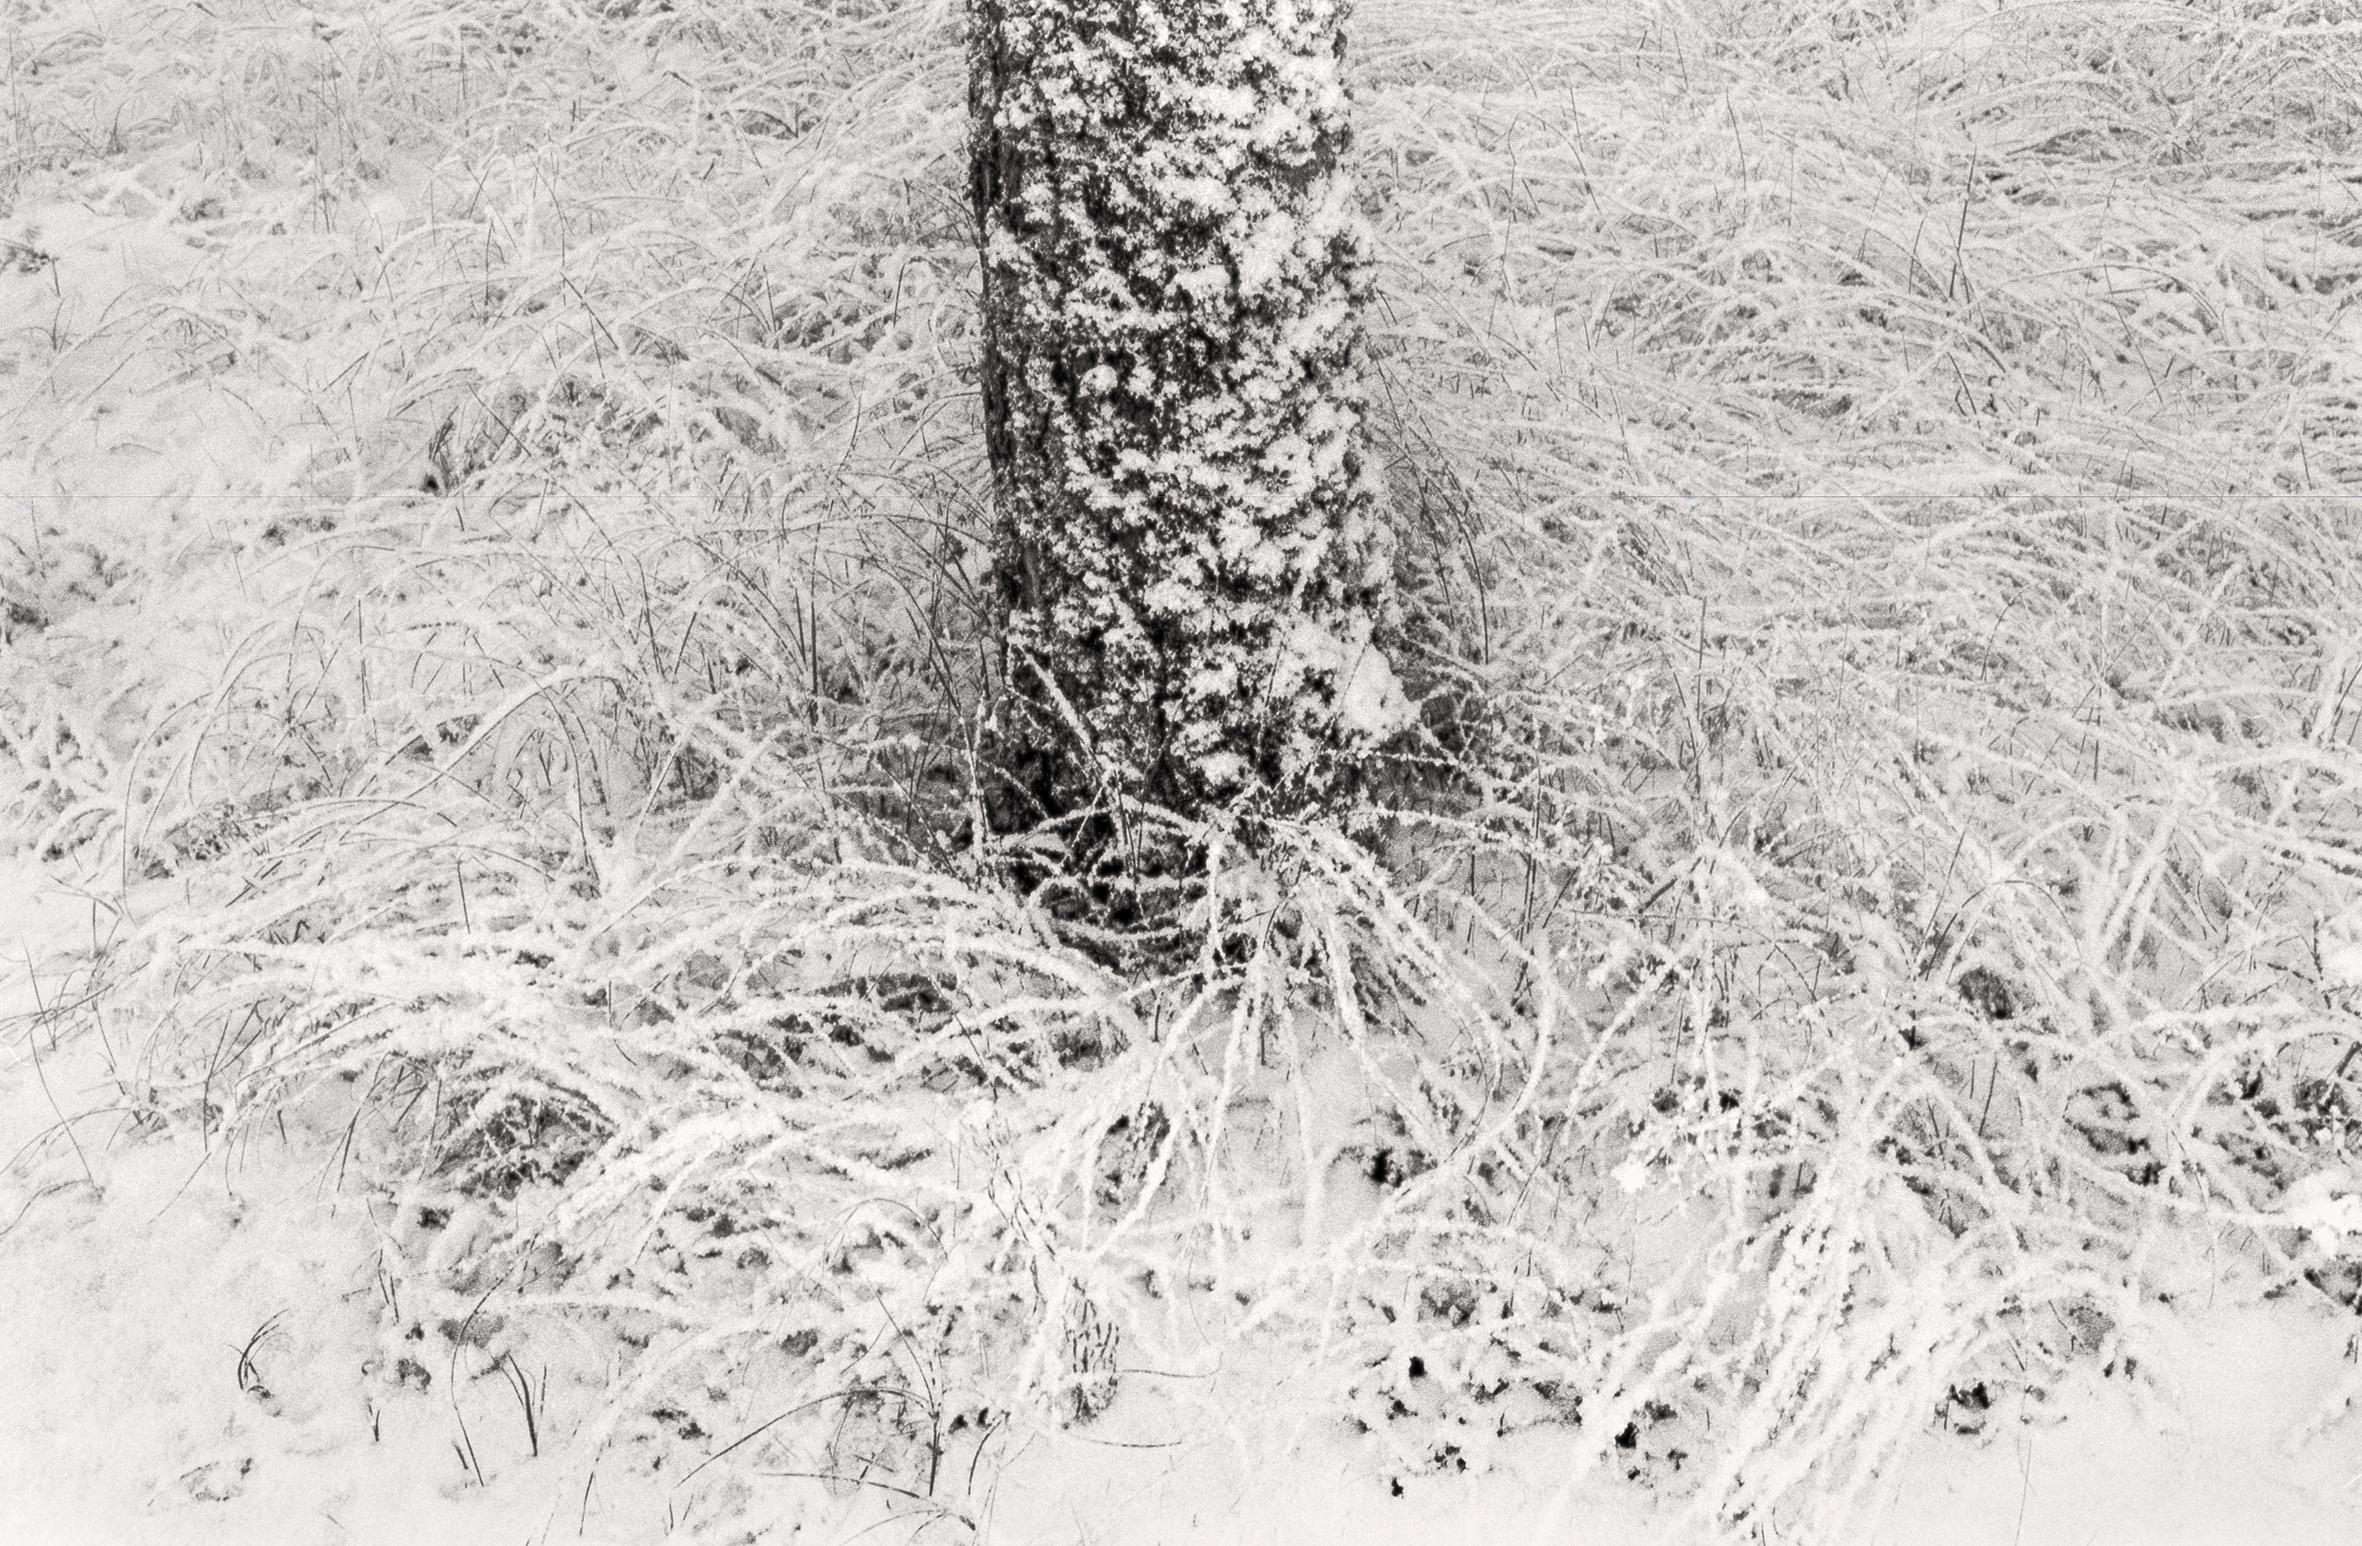 Ugne Pouwell Black and White Photograph – „Baltic Freeze #2“ – Schwarz-Weiß- analoge Landschaftsfotografie in Schwarz-Weiß 42 x 27 cm